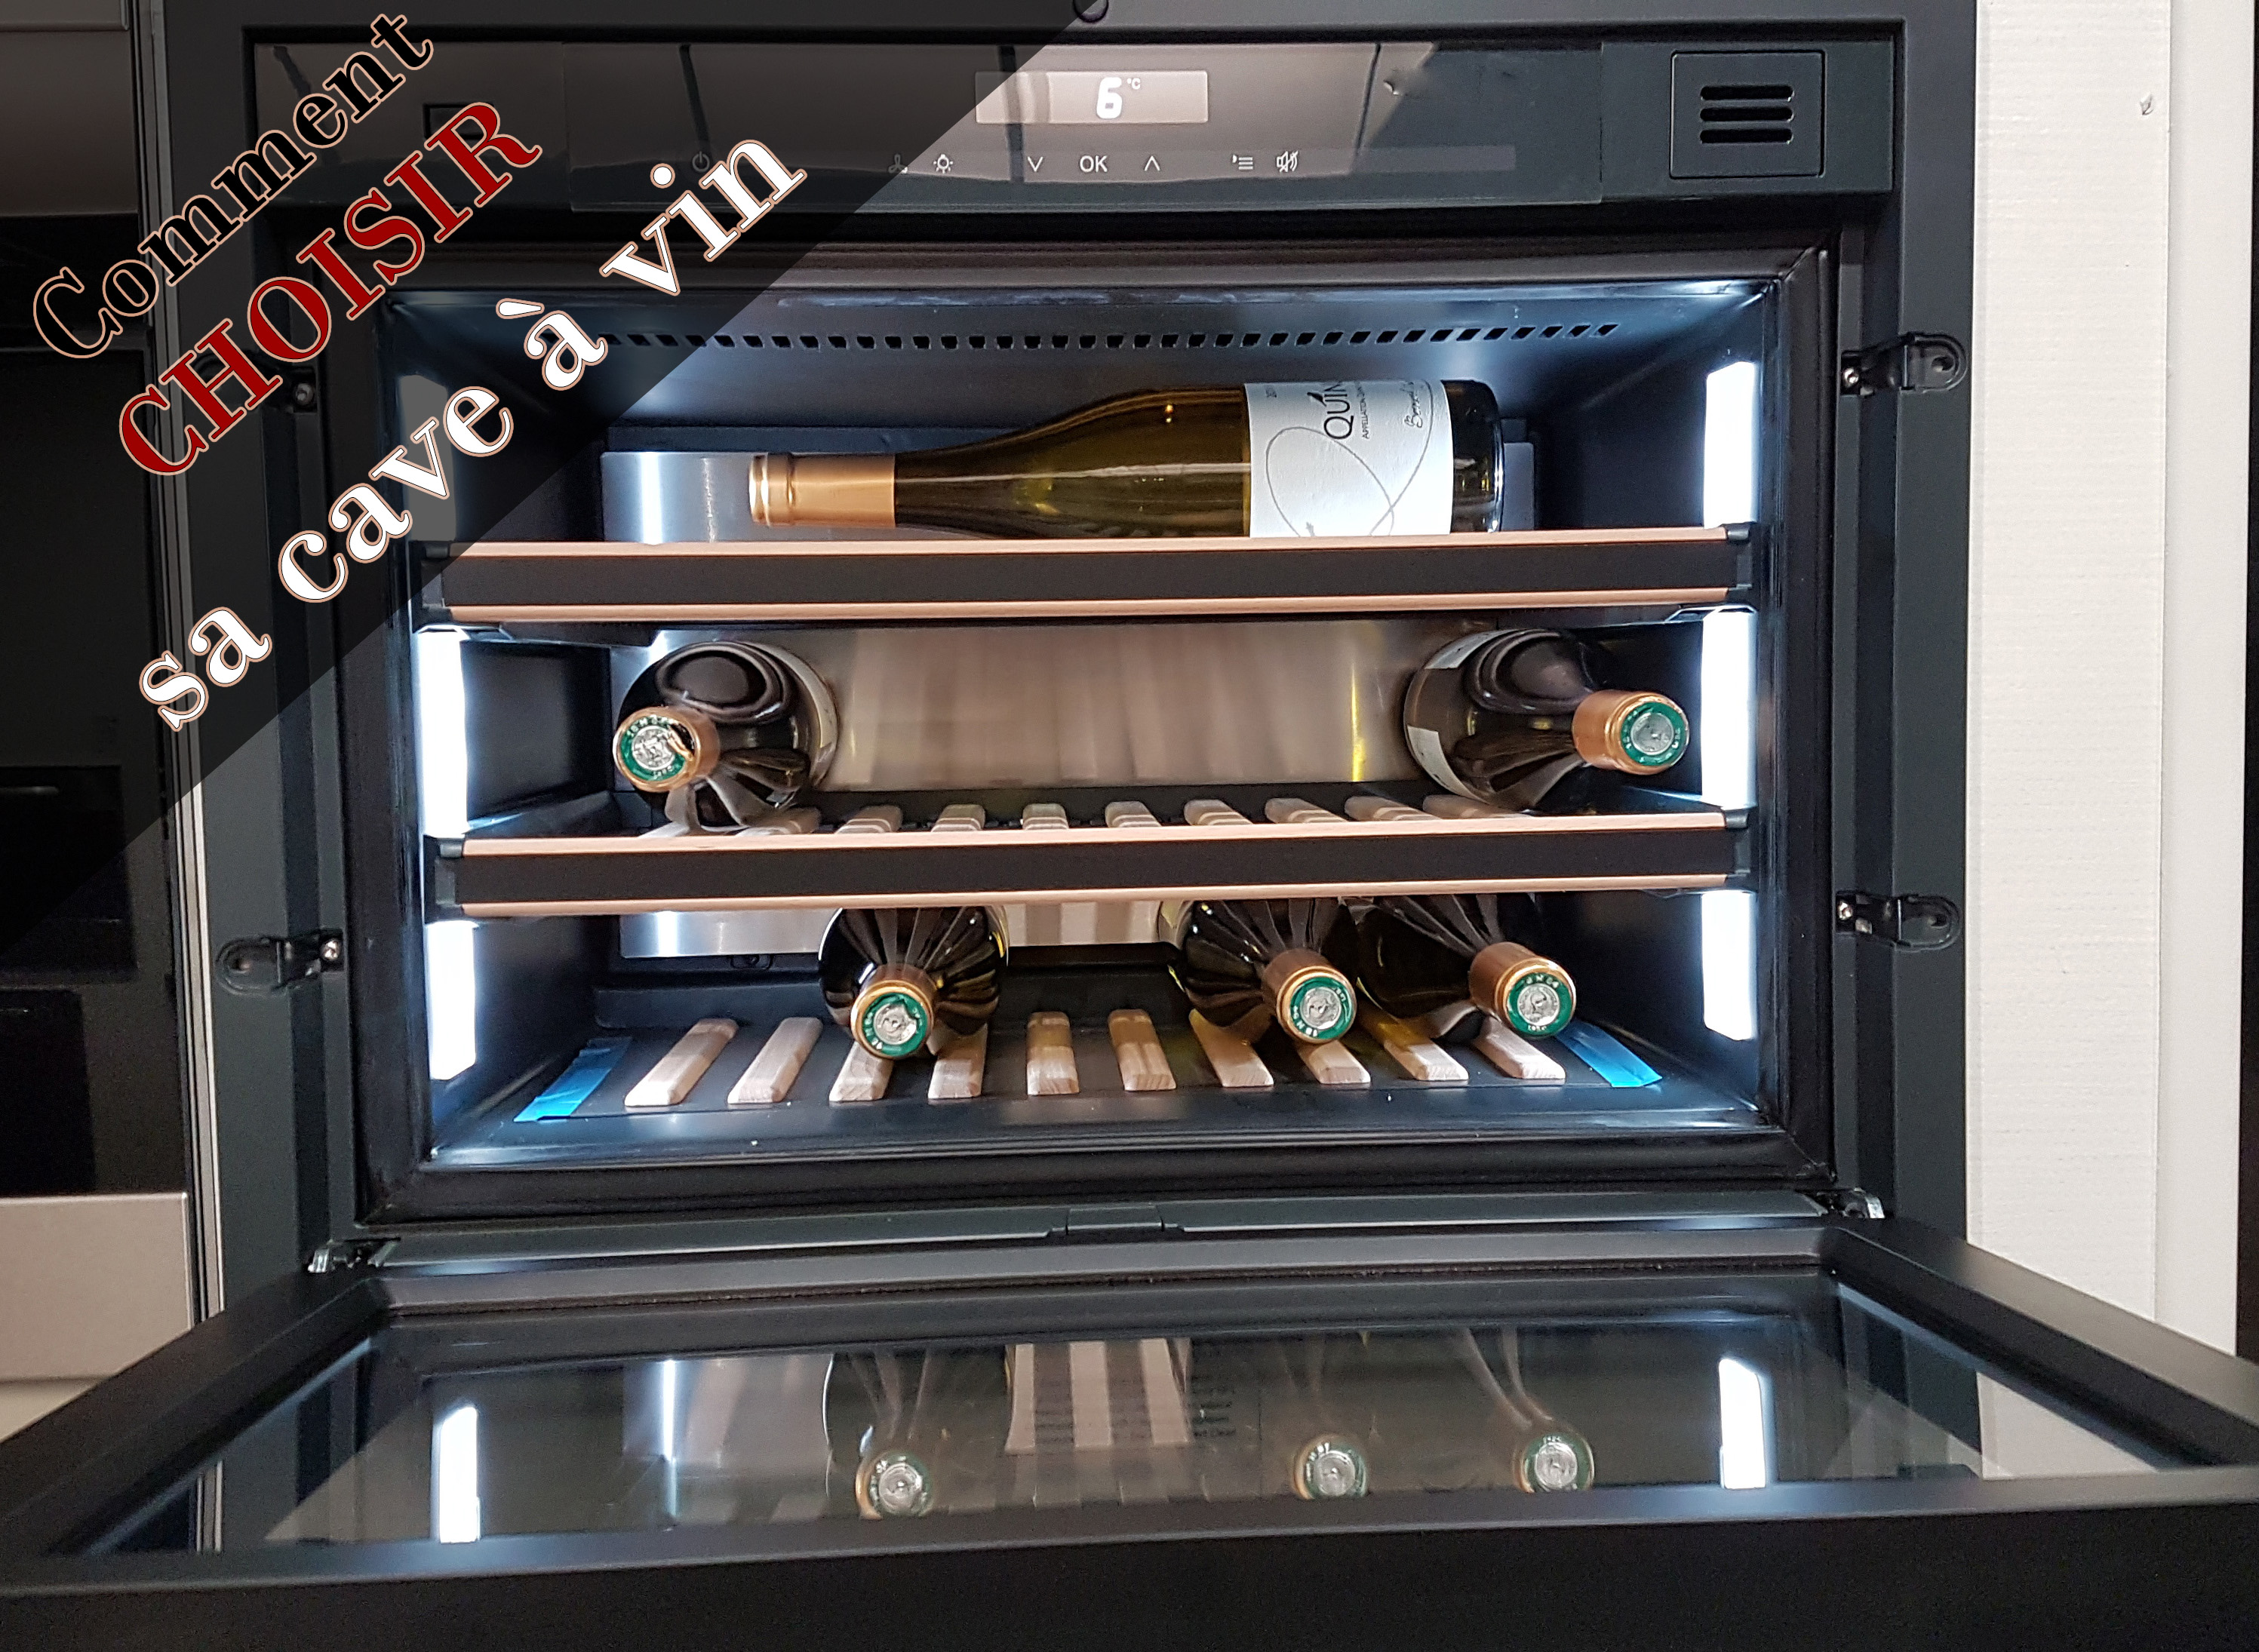 Réfrigérateur 1 porte ELECTROLUX ERF4116DOW Pas Cher 